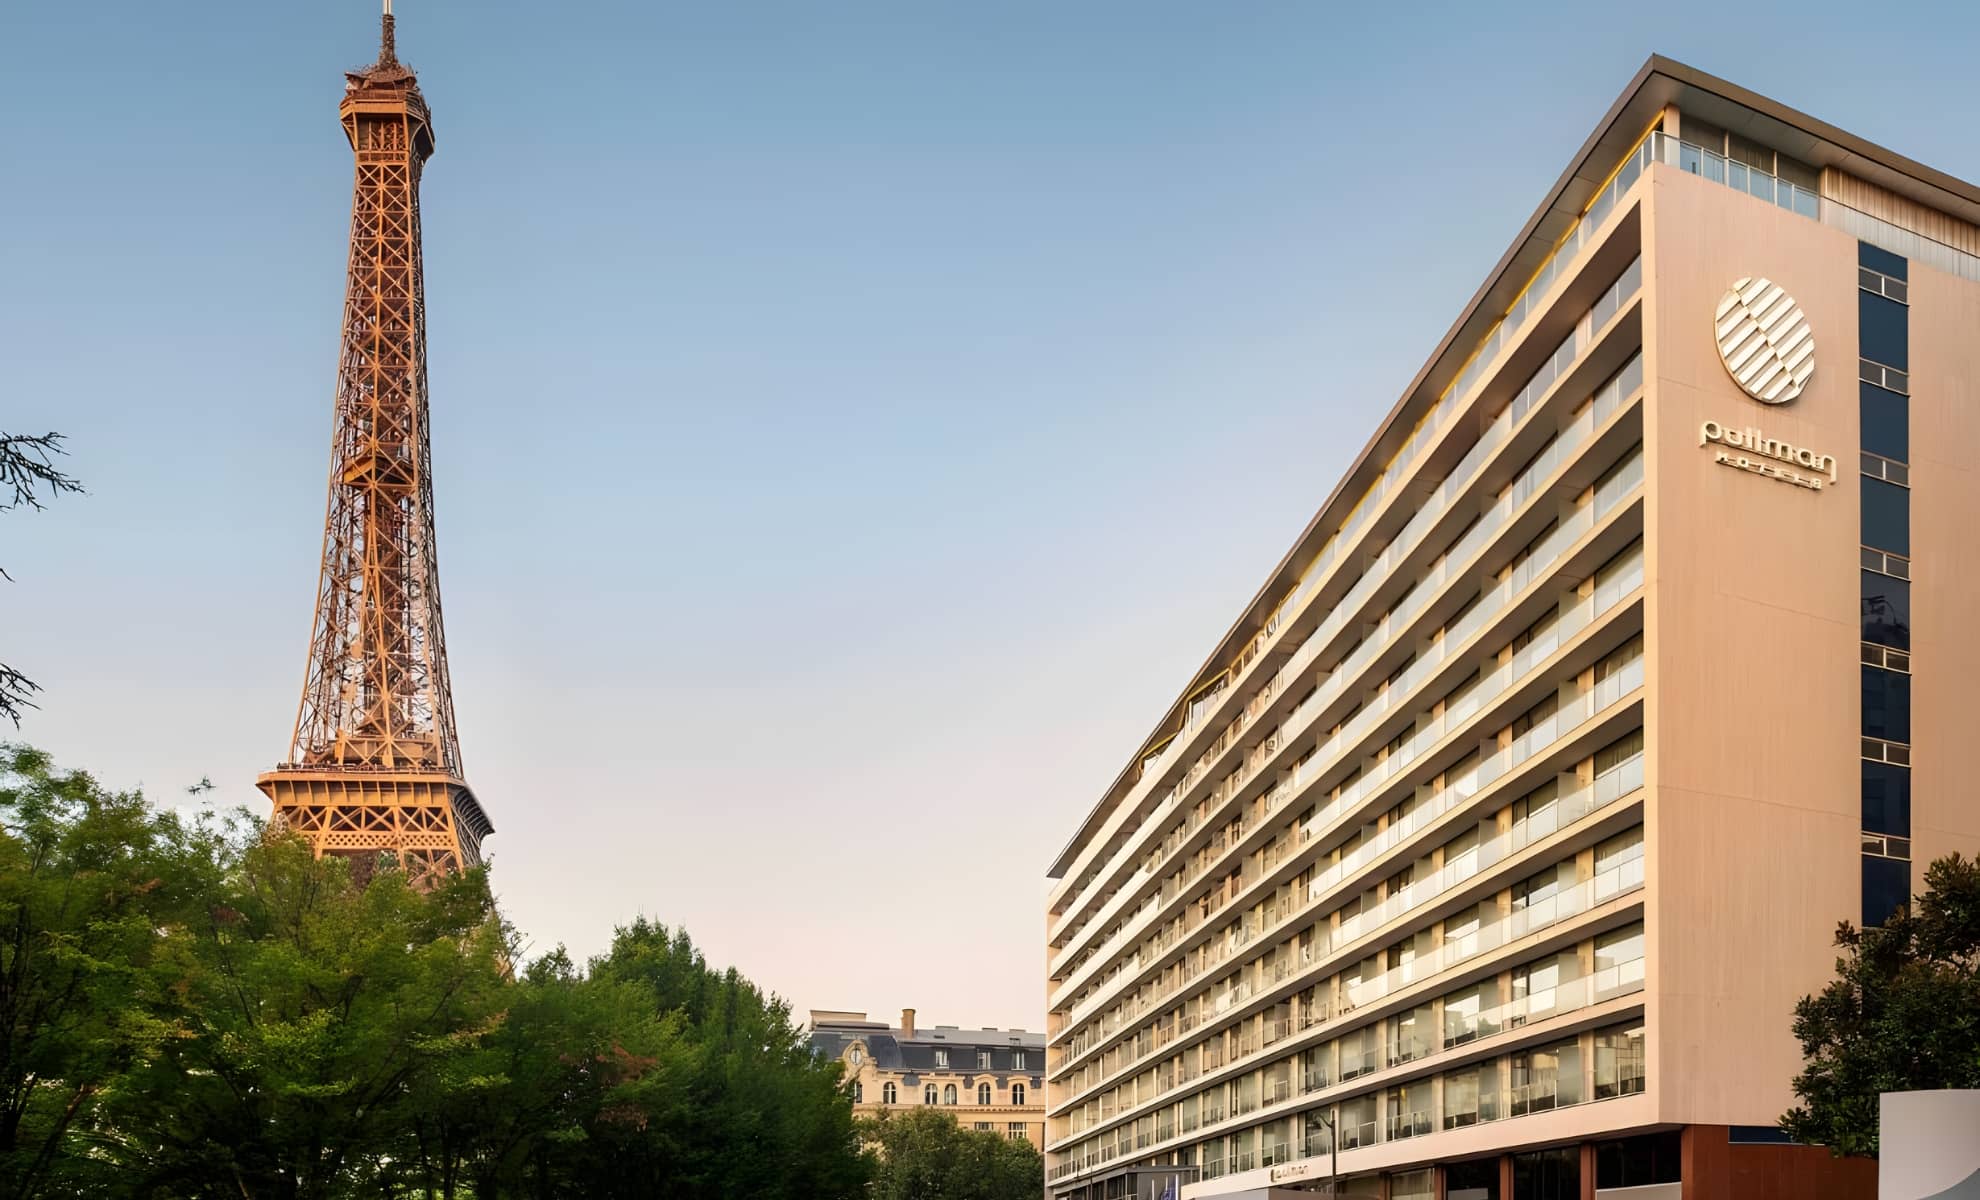 Hôtel Pullman Paris Tour Eiffel, France